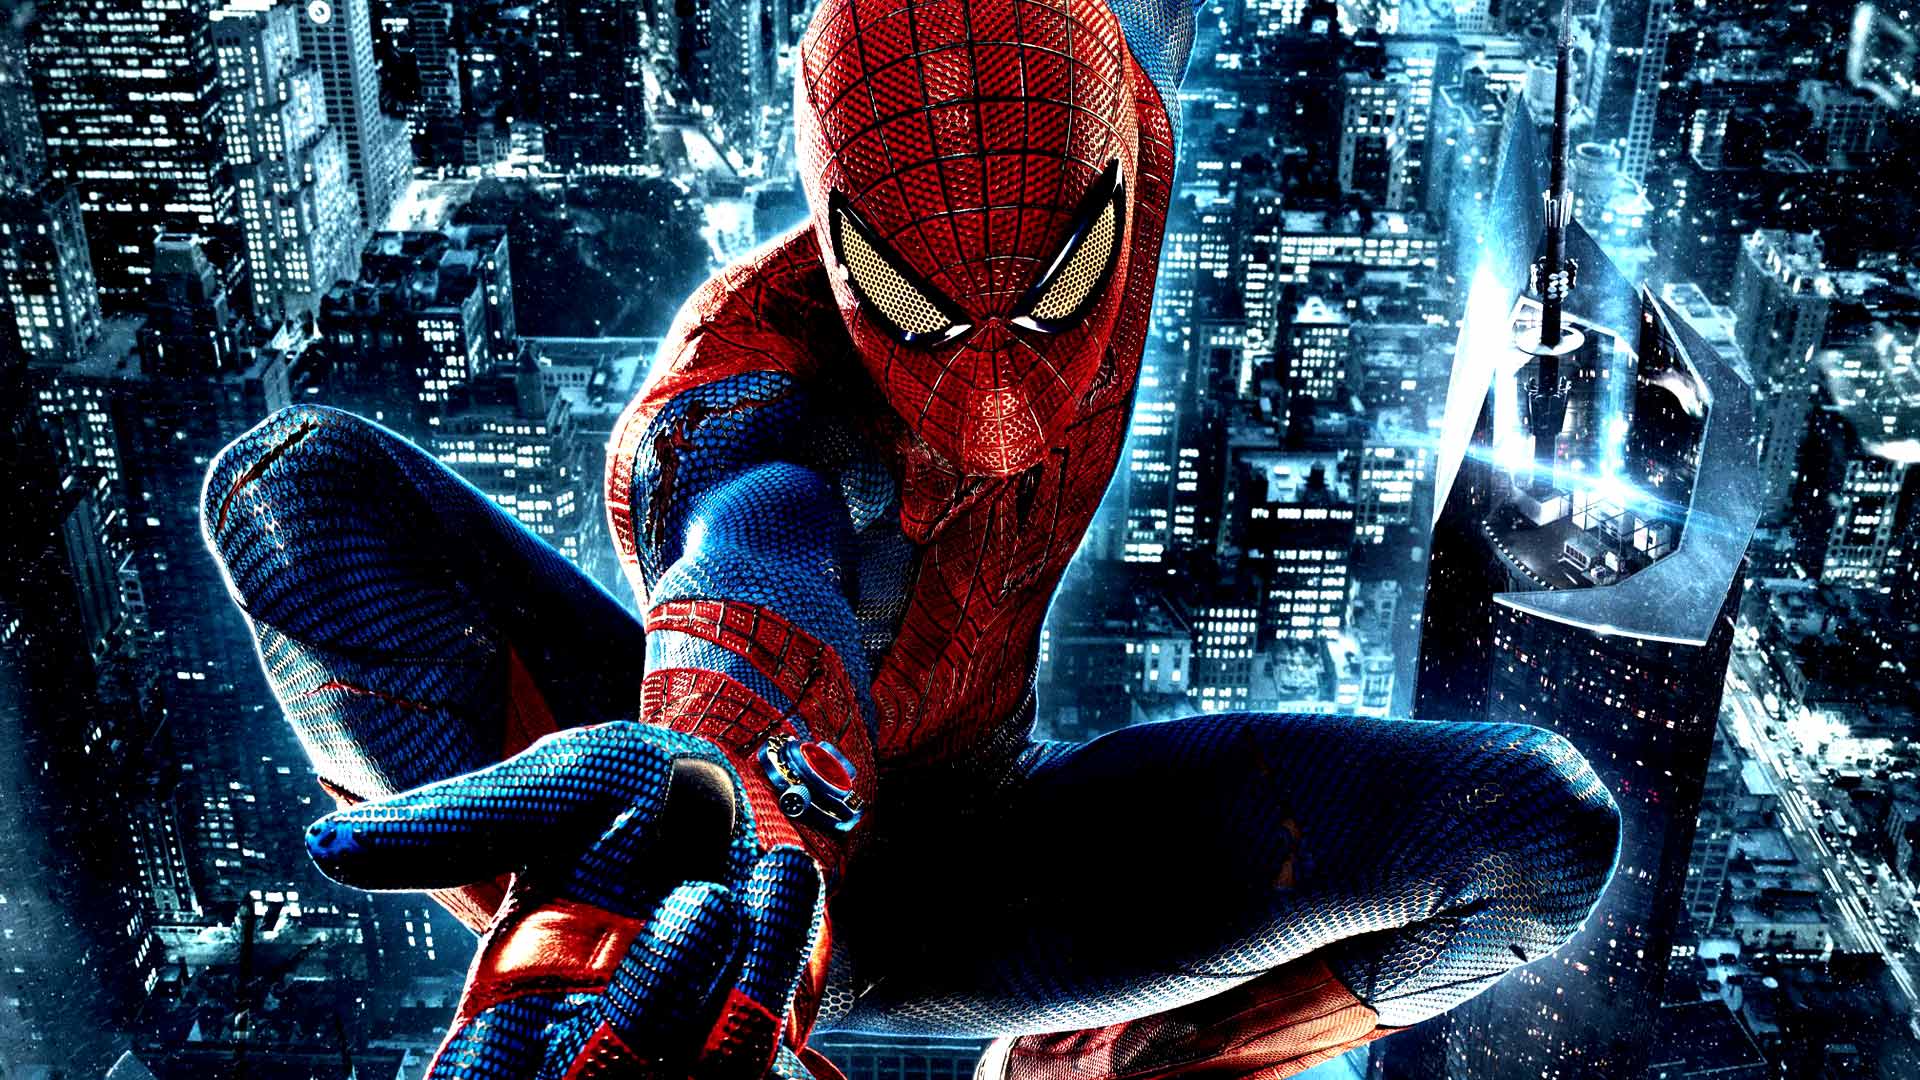 l'incroyable spider man 2 hd fond d'écran,homme araignée,super héros,personnage fictif,homme chauve souris,oeuvre de cg